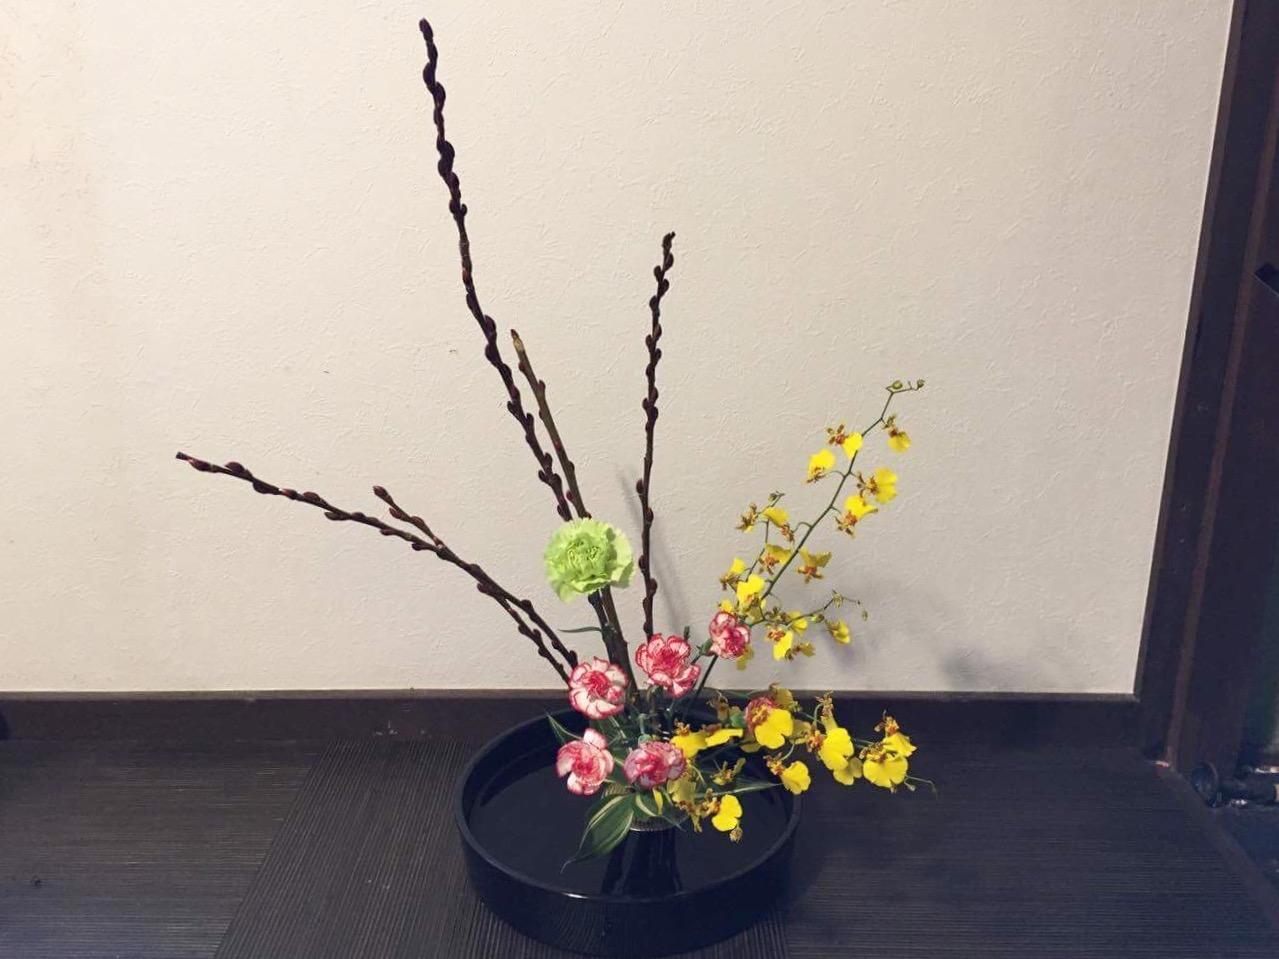 Ikebana - the Japanese flower arrangement